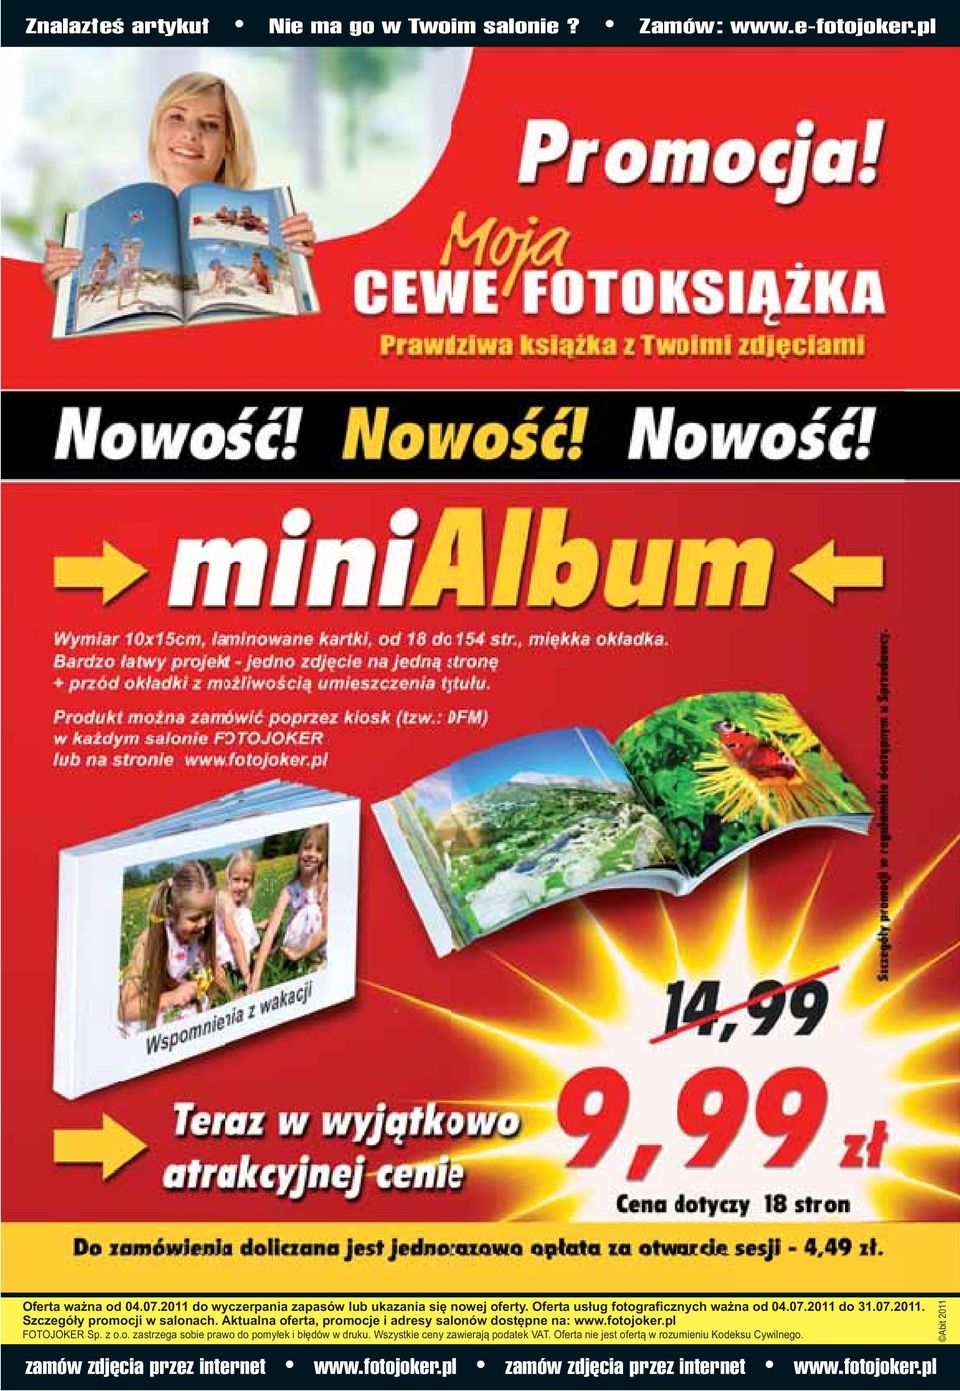 Aktualna oferta, promocje i adresy salonów dostępne na: www.fotojoker.pl FOTOJOKER Sp. z o.o. zastrzega sobie prawo do pomyłek i błędów w druku.